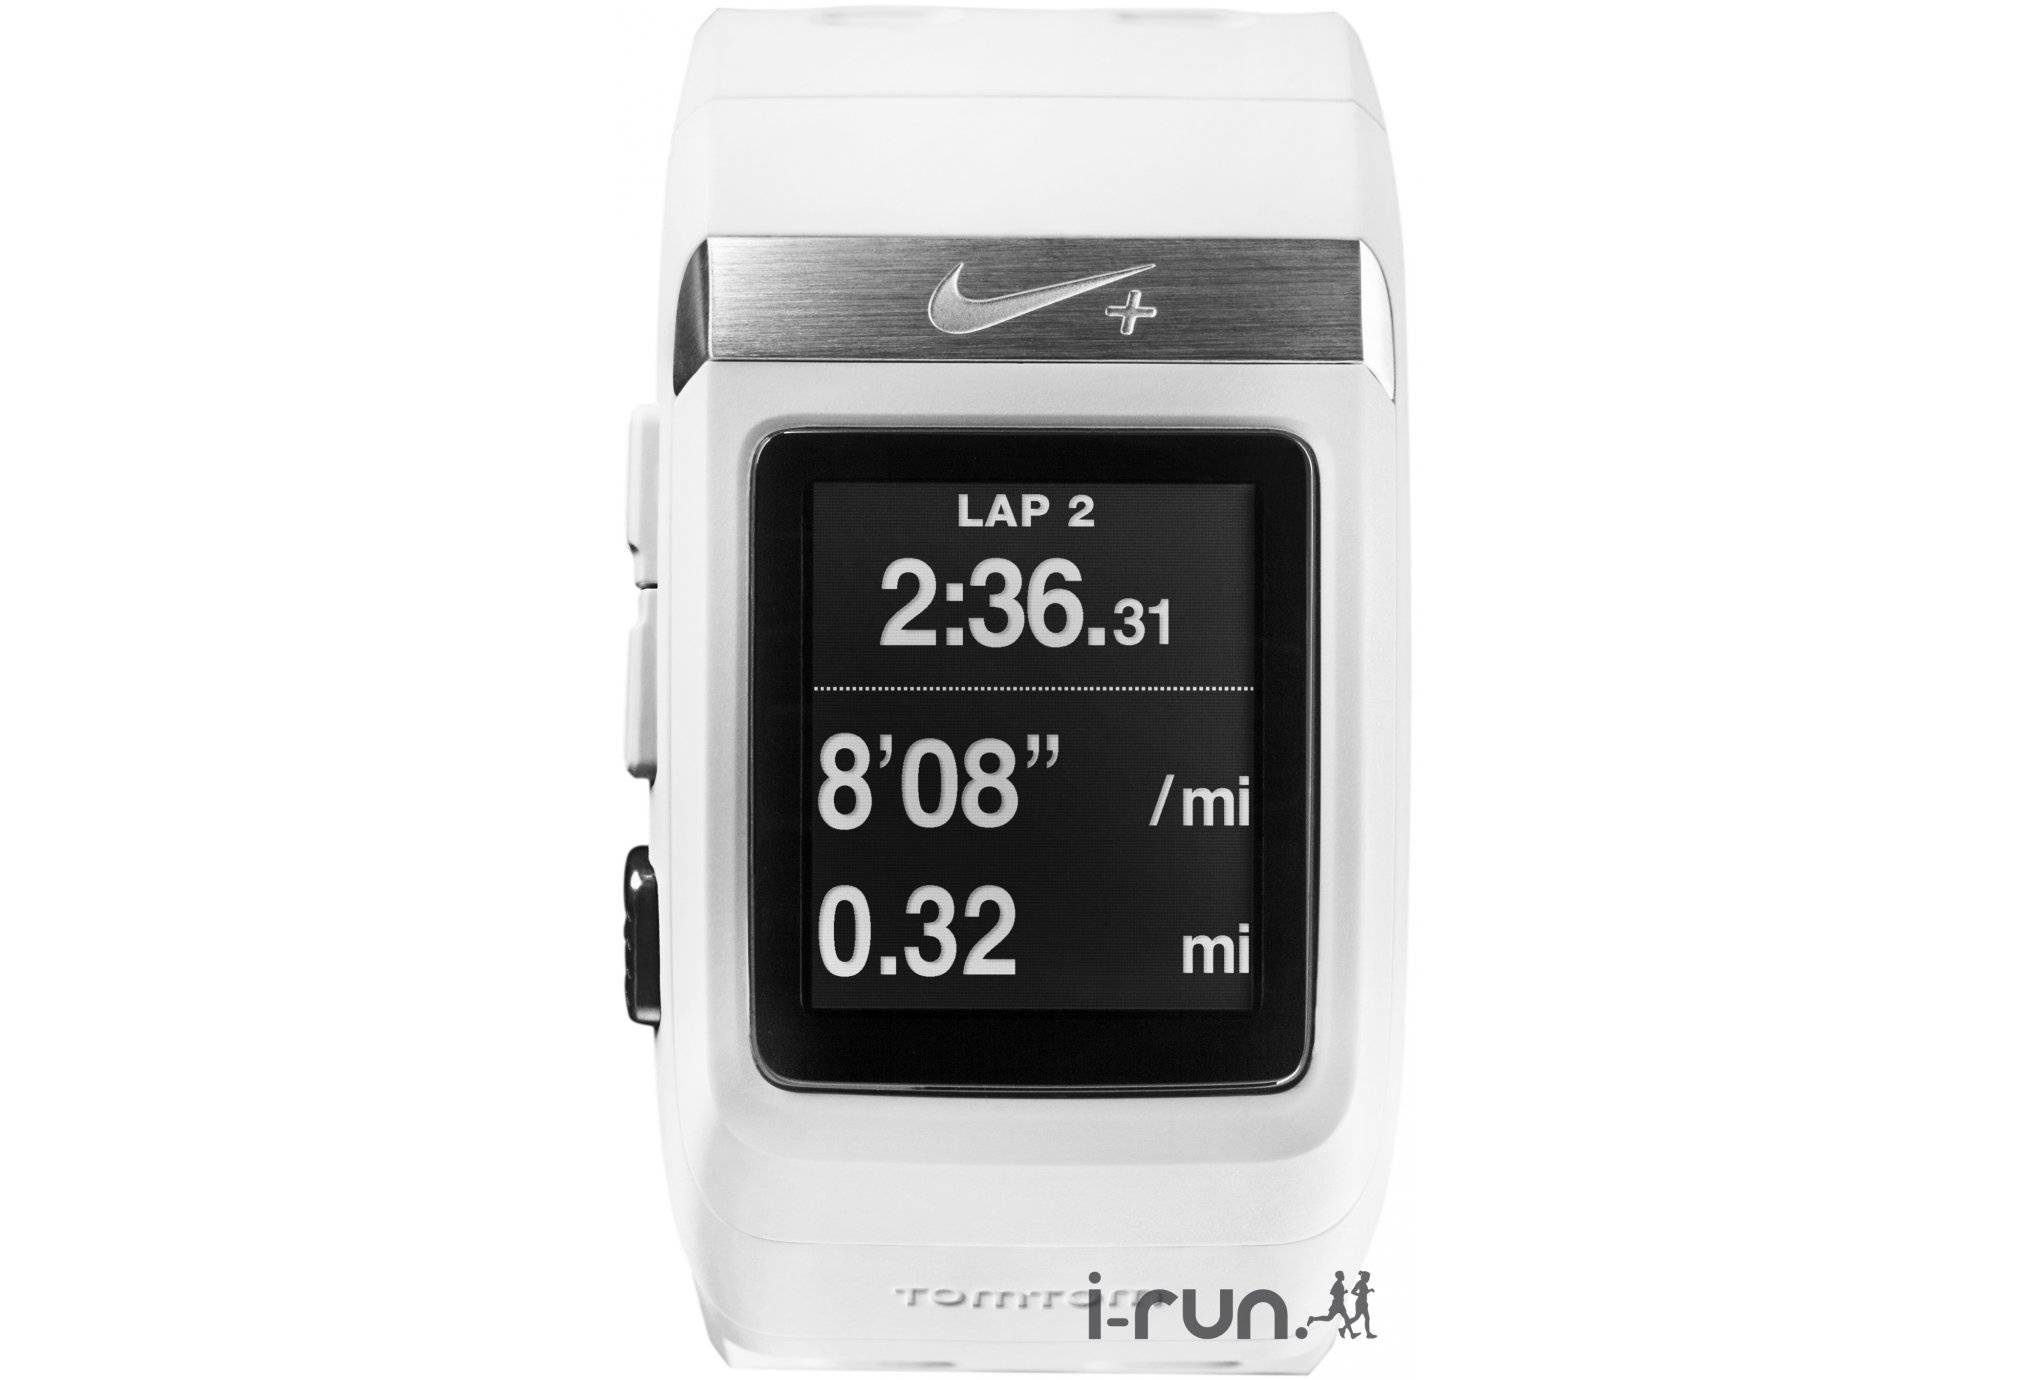 Nike SportWatch GPS Nike+ tomtom 